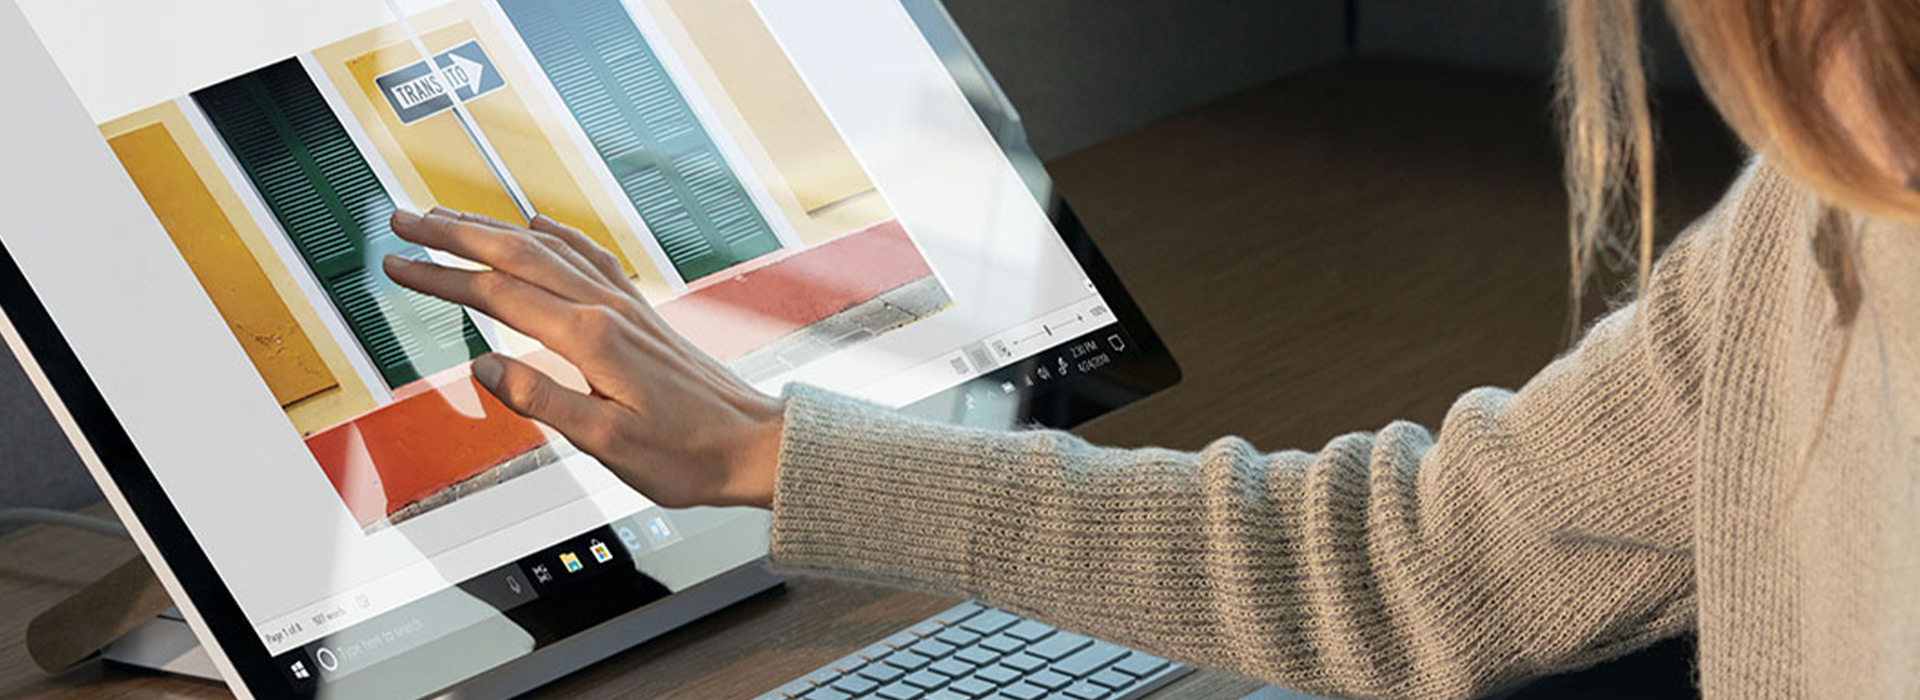 一位女士正在使用 Surface Studio 的触摸屏